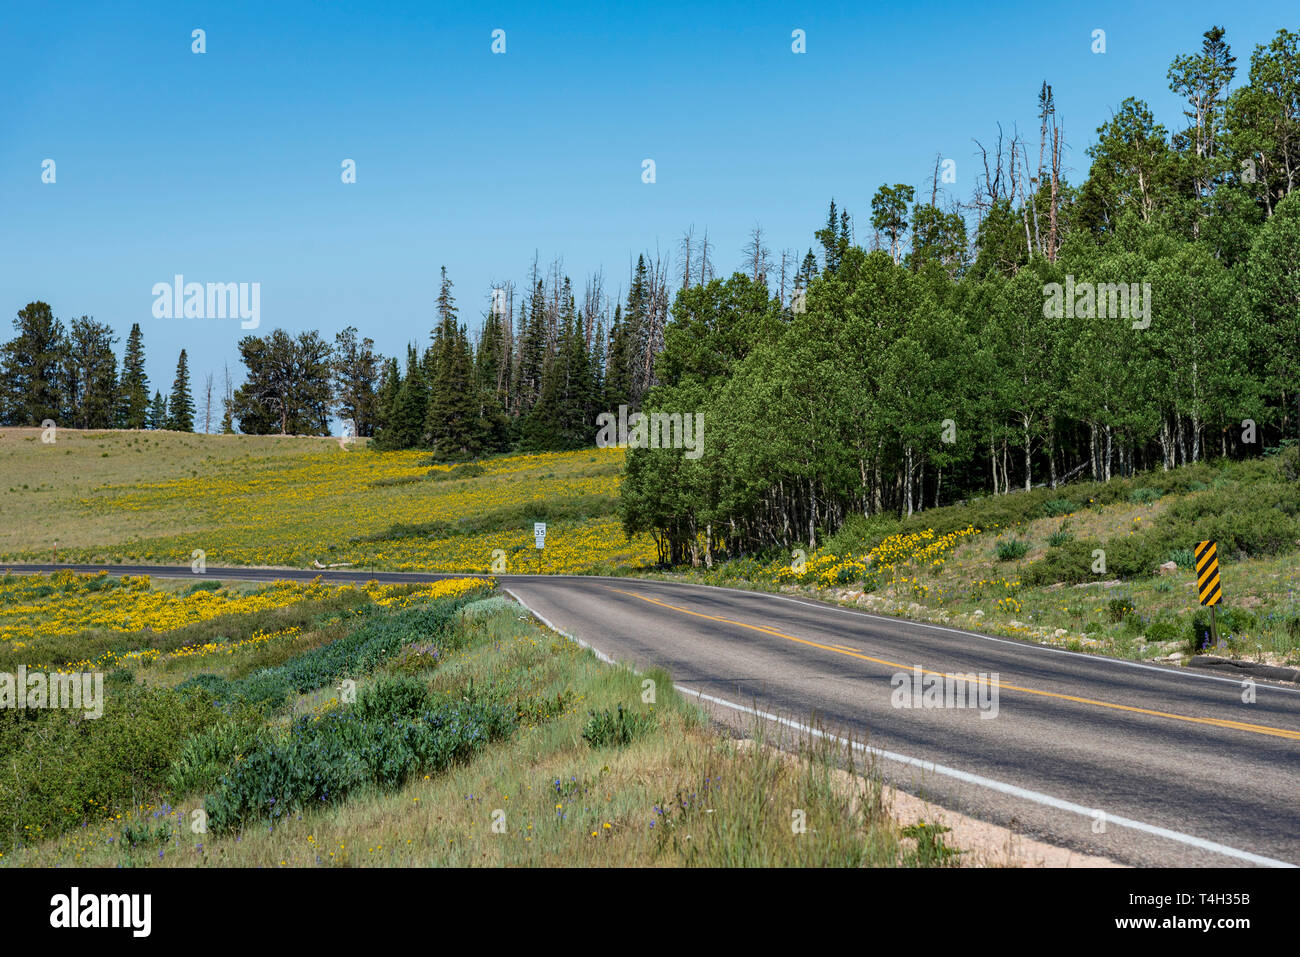 Zwei Lane Country highway geschwungene rund um Wald und grünen Wiesen mit gelben Blumen unter einem klaren blauen Himmel. Stockfoto